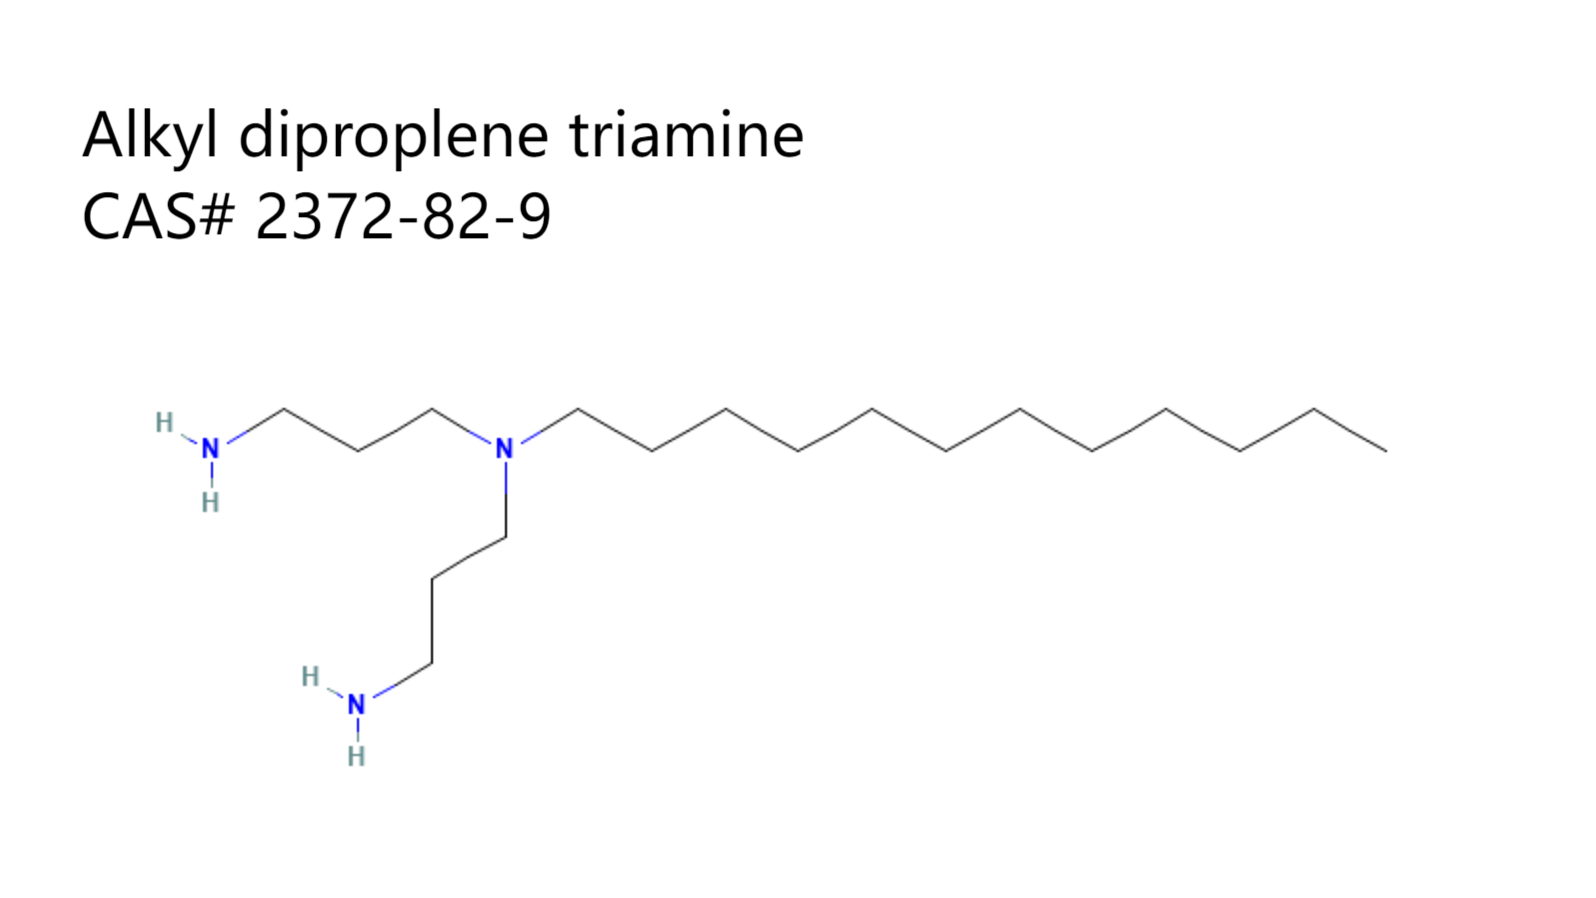 Dodecyl diproplene triamine